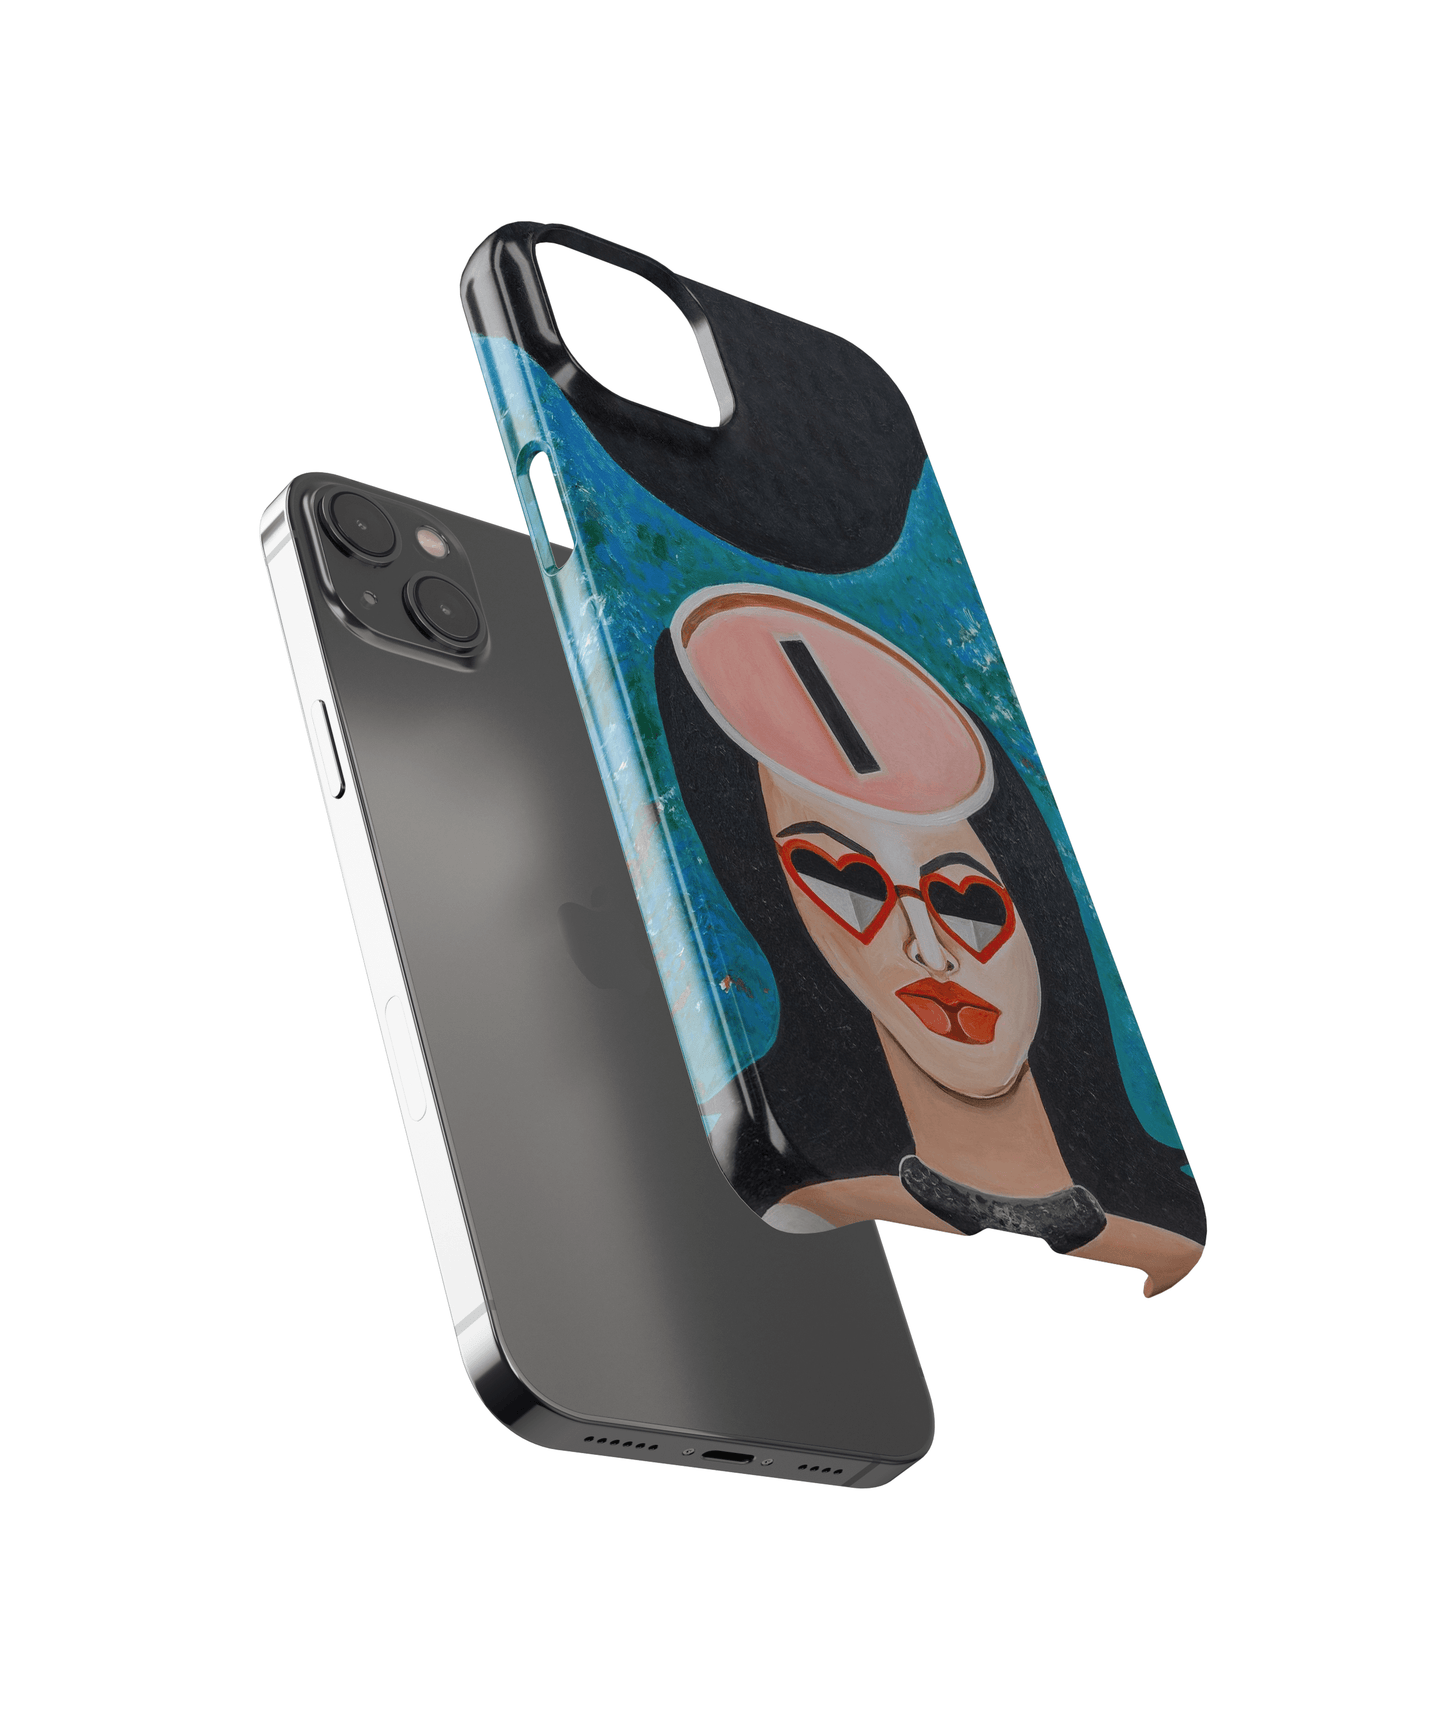 Materialiste - Xiaomi 10i phone case